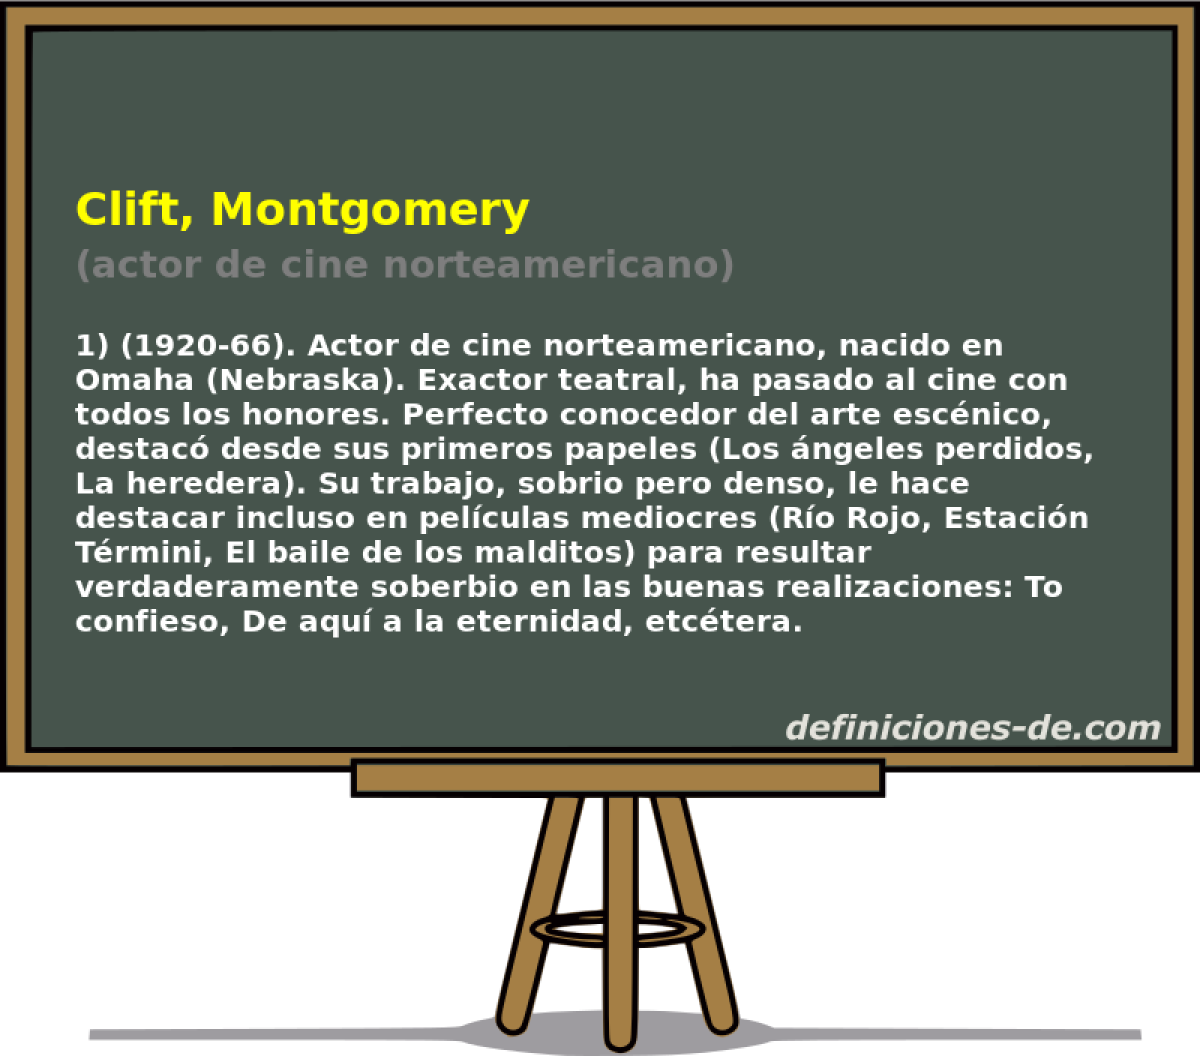 Clift, Montgomery (actor de cine norteamericano)